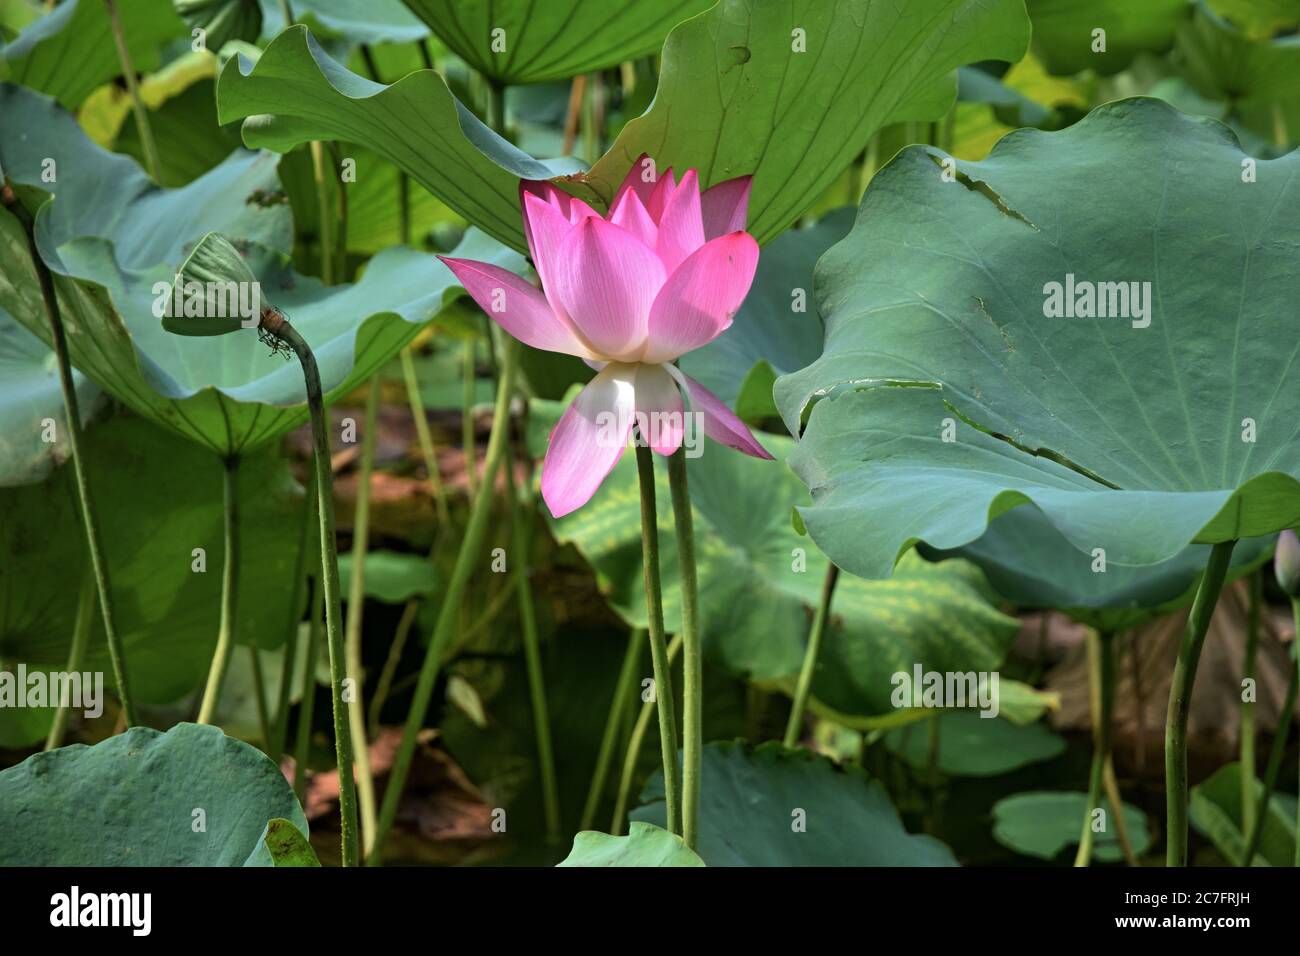 Fiore di loto - simbolo di bellezza e purezza divine. Piccolo lago coperto di loto in piena fioritura. Foto Stock